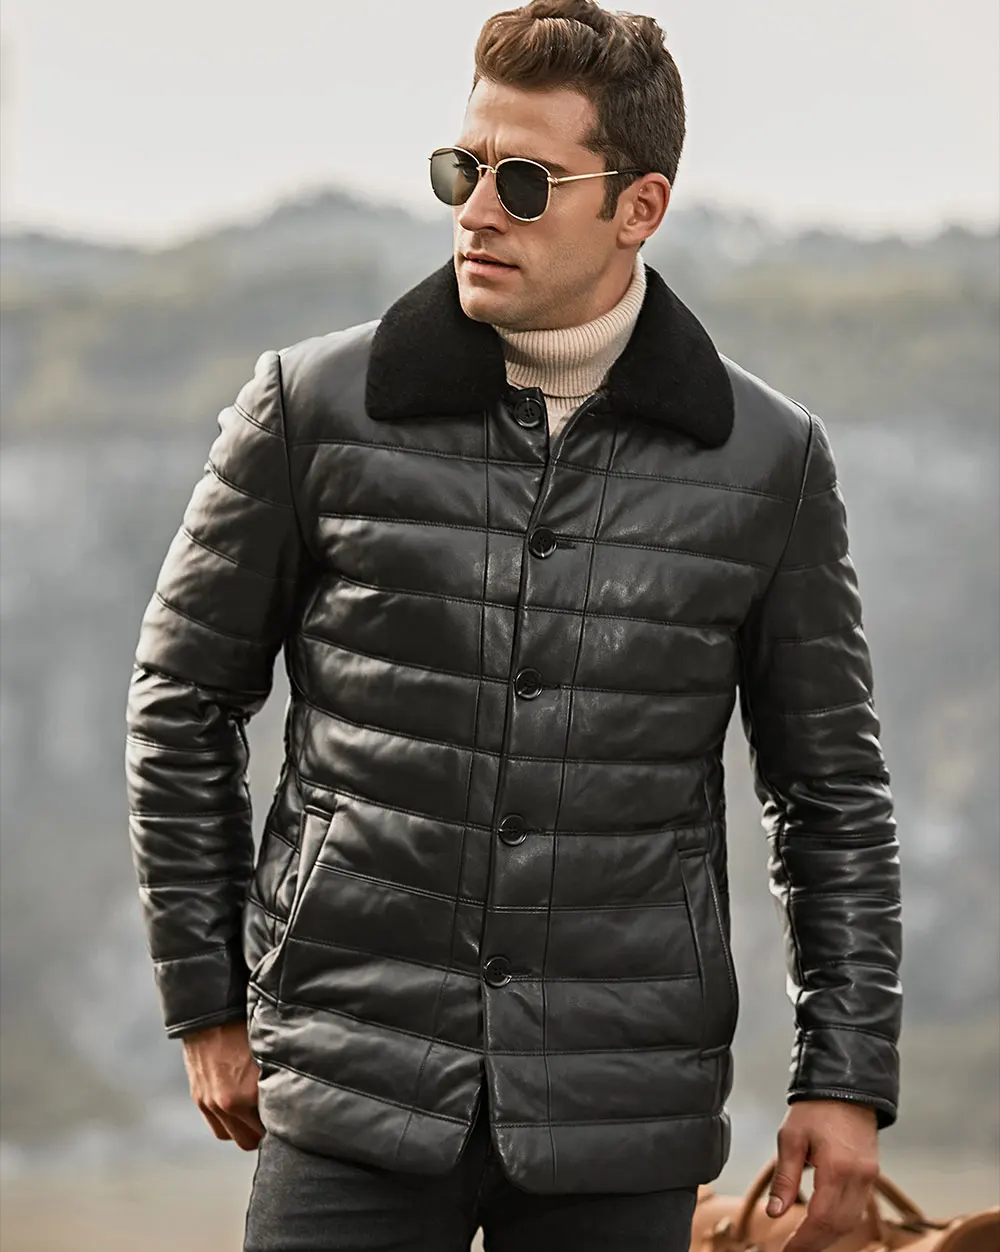 Kожаная куртка мужская пуховое пальто из шкуры ягненка FLAVOR, кожаная куртка с воротником из овечьей шерсти, жакет из натуральной кожи для зимы